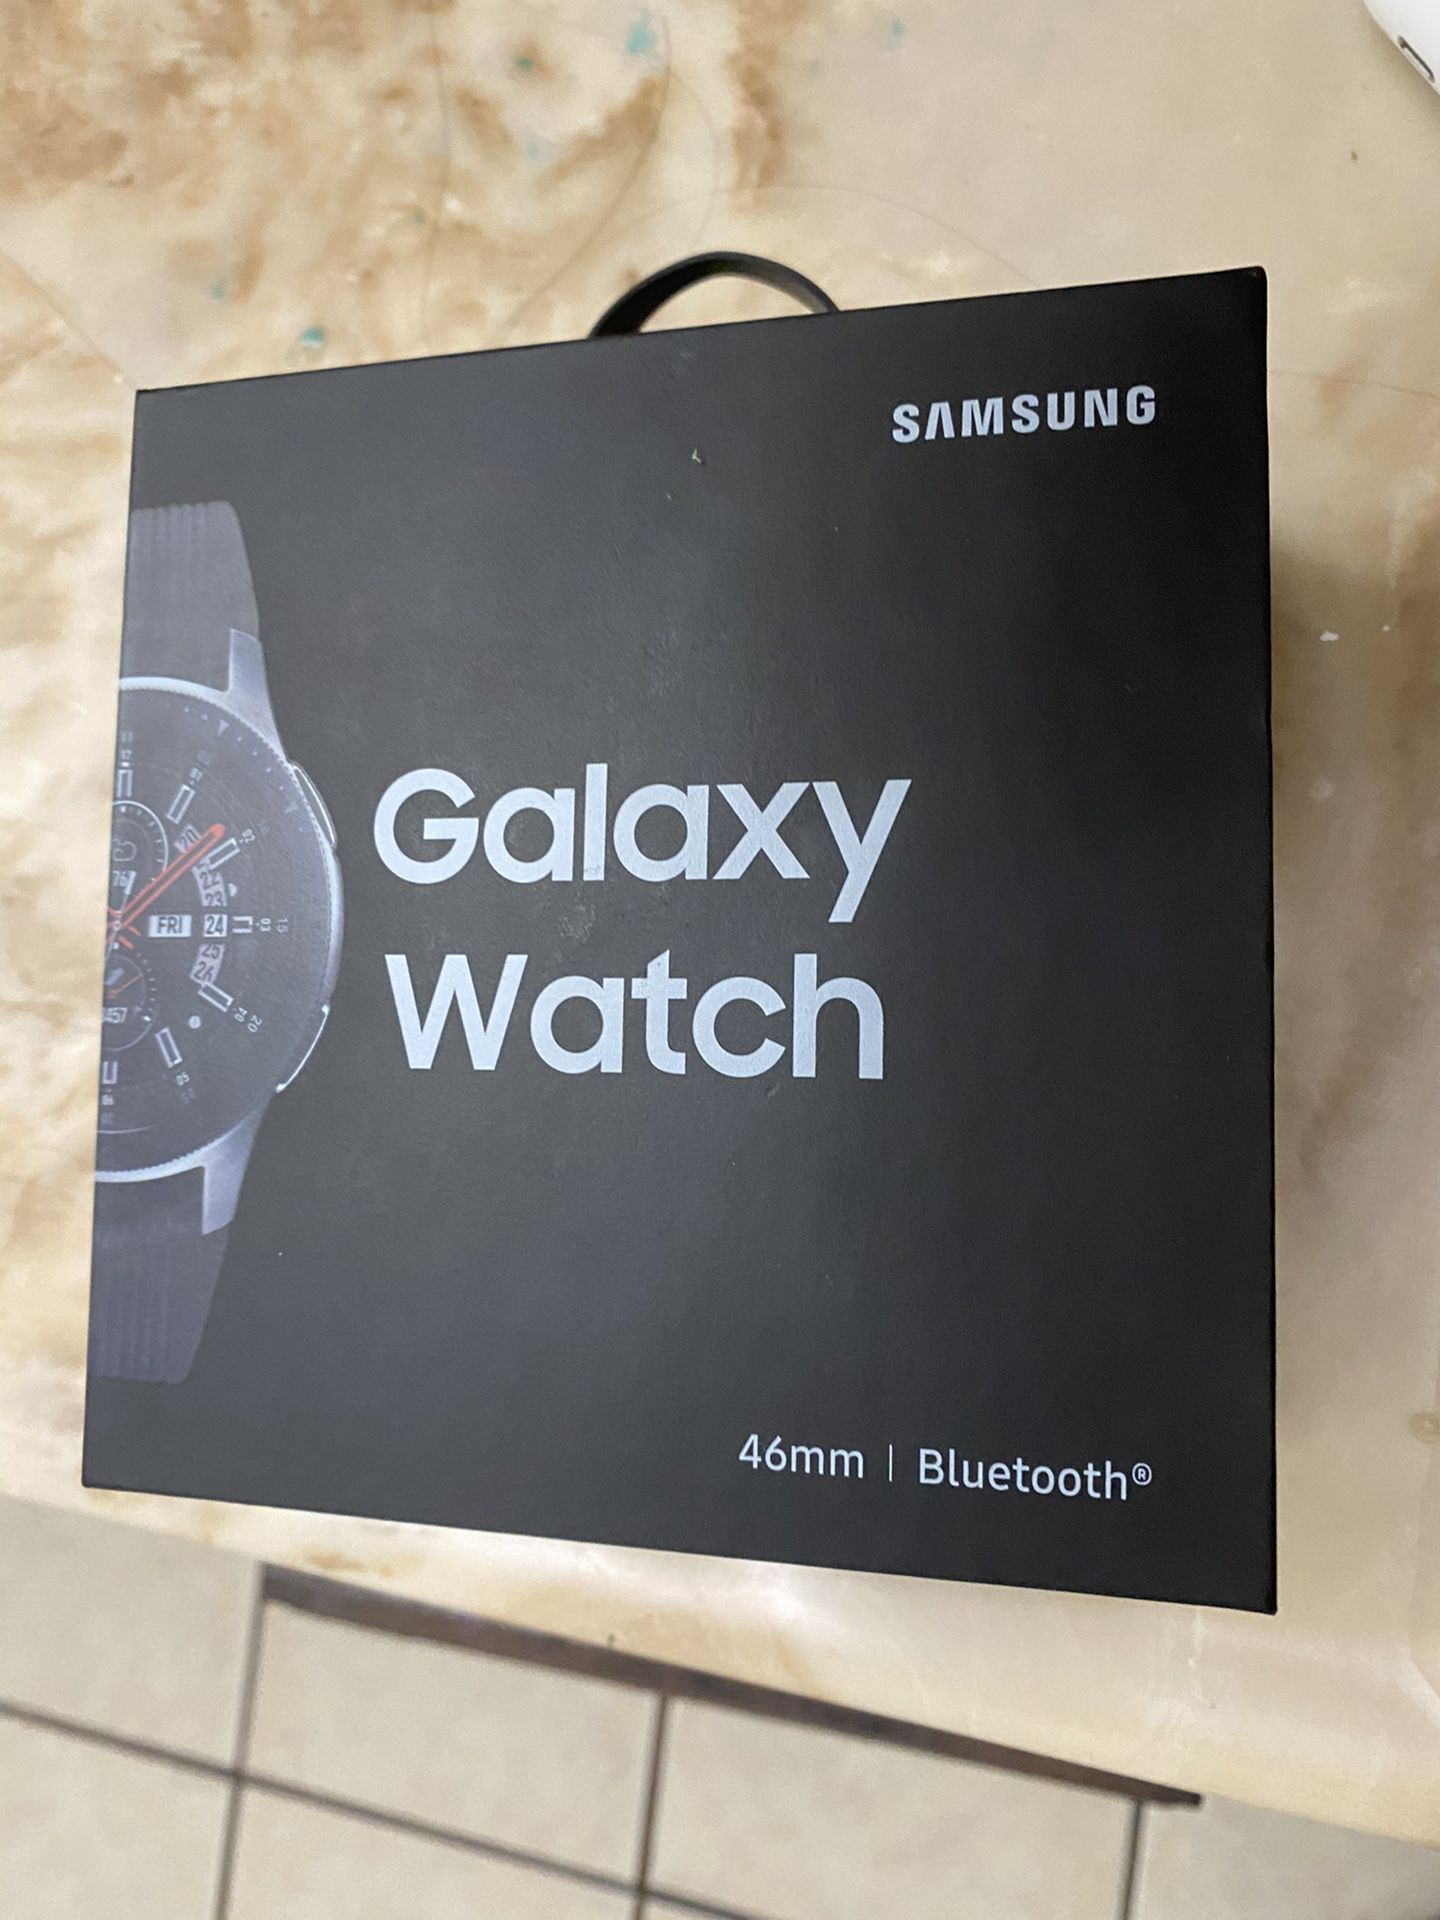 Galaxy watch 46mm | Bluetooth